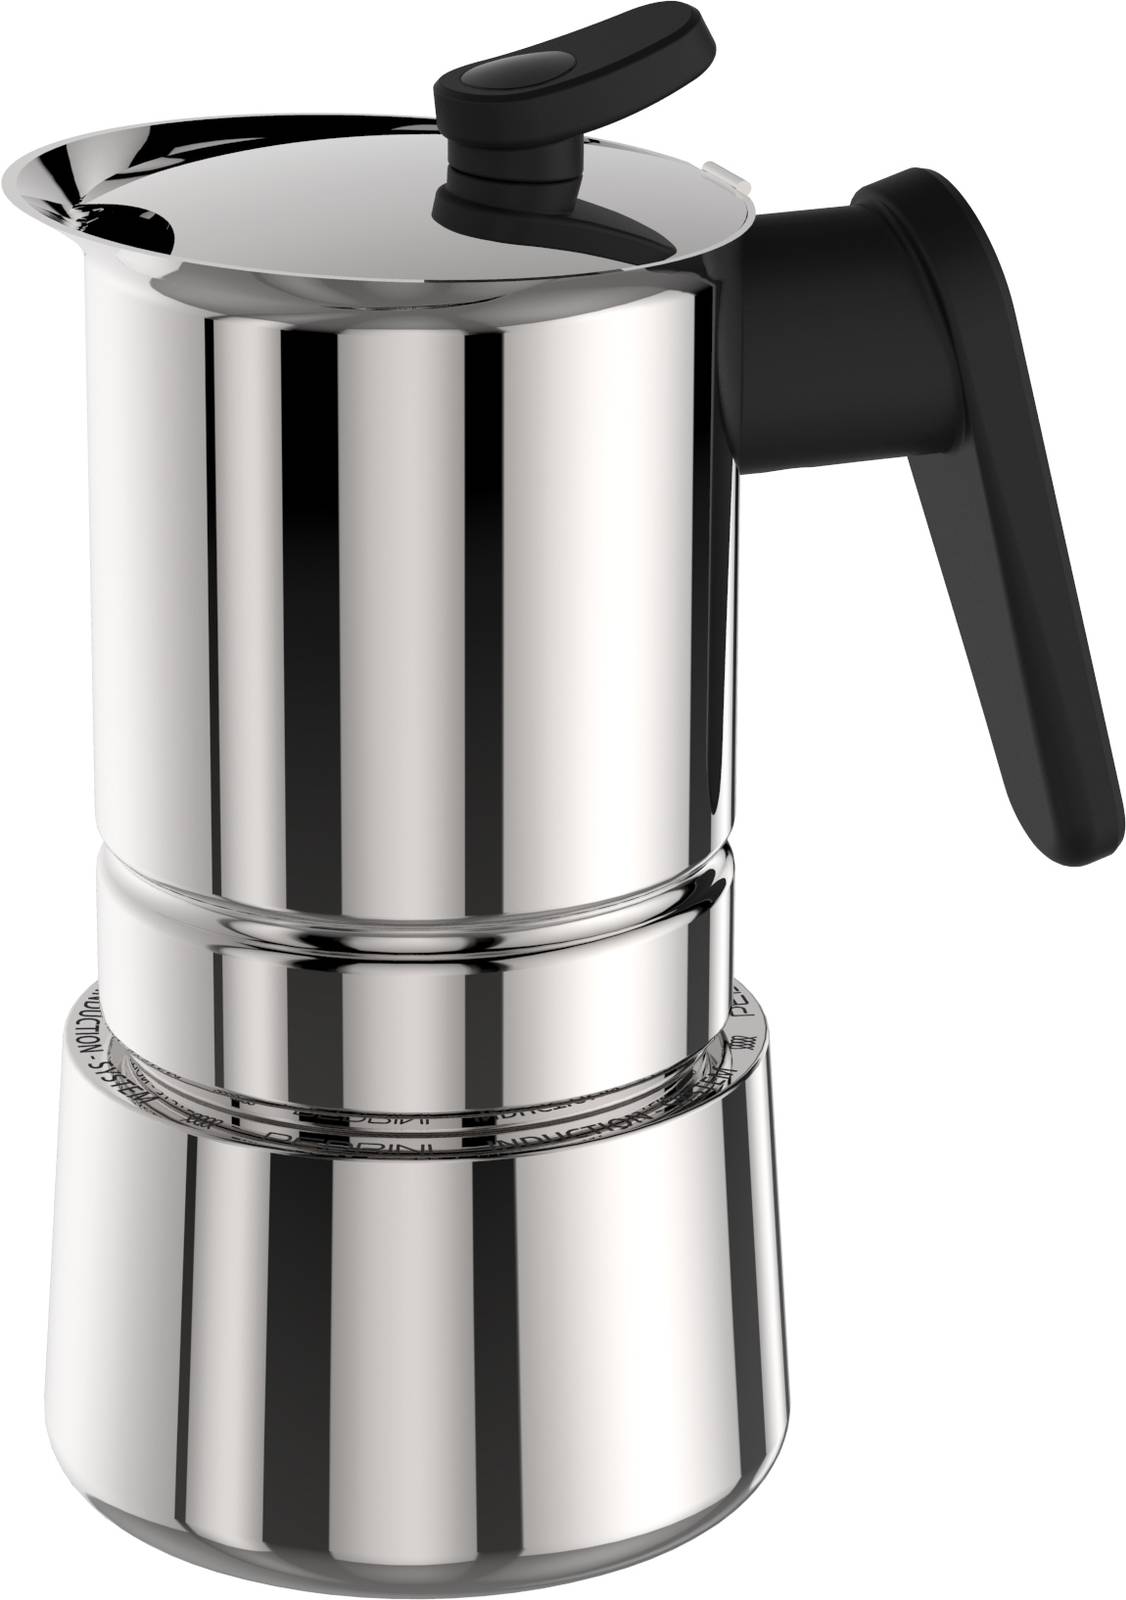 Acciaio Inox 300 ML Diealles Shine Caffettiera Moka 6 tazze per Caffè Espresso Caffettiera Induzione 